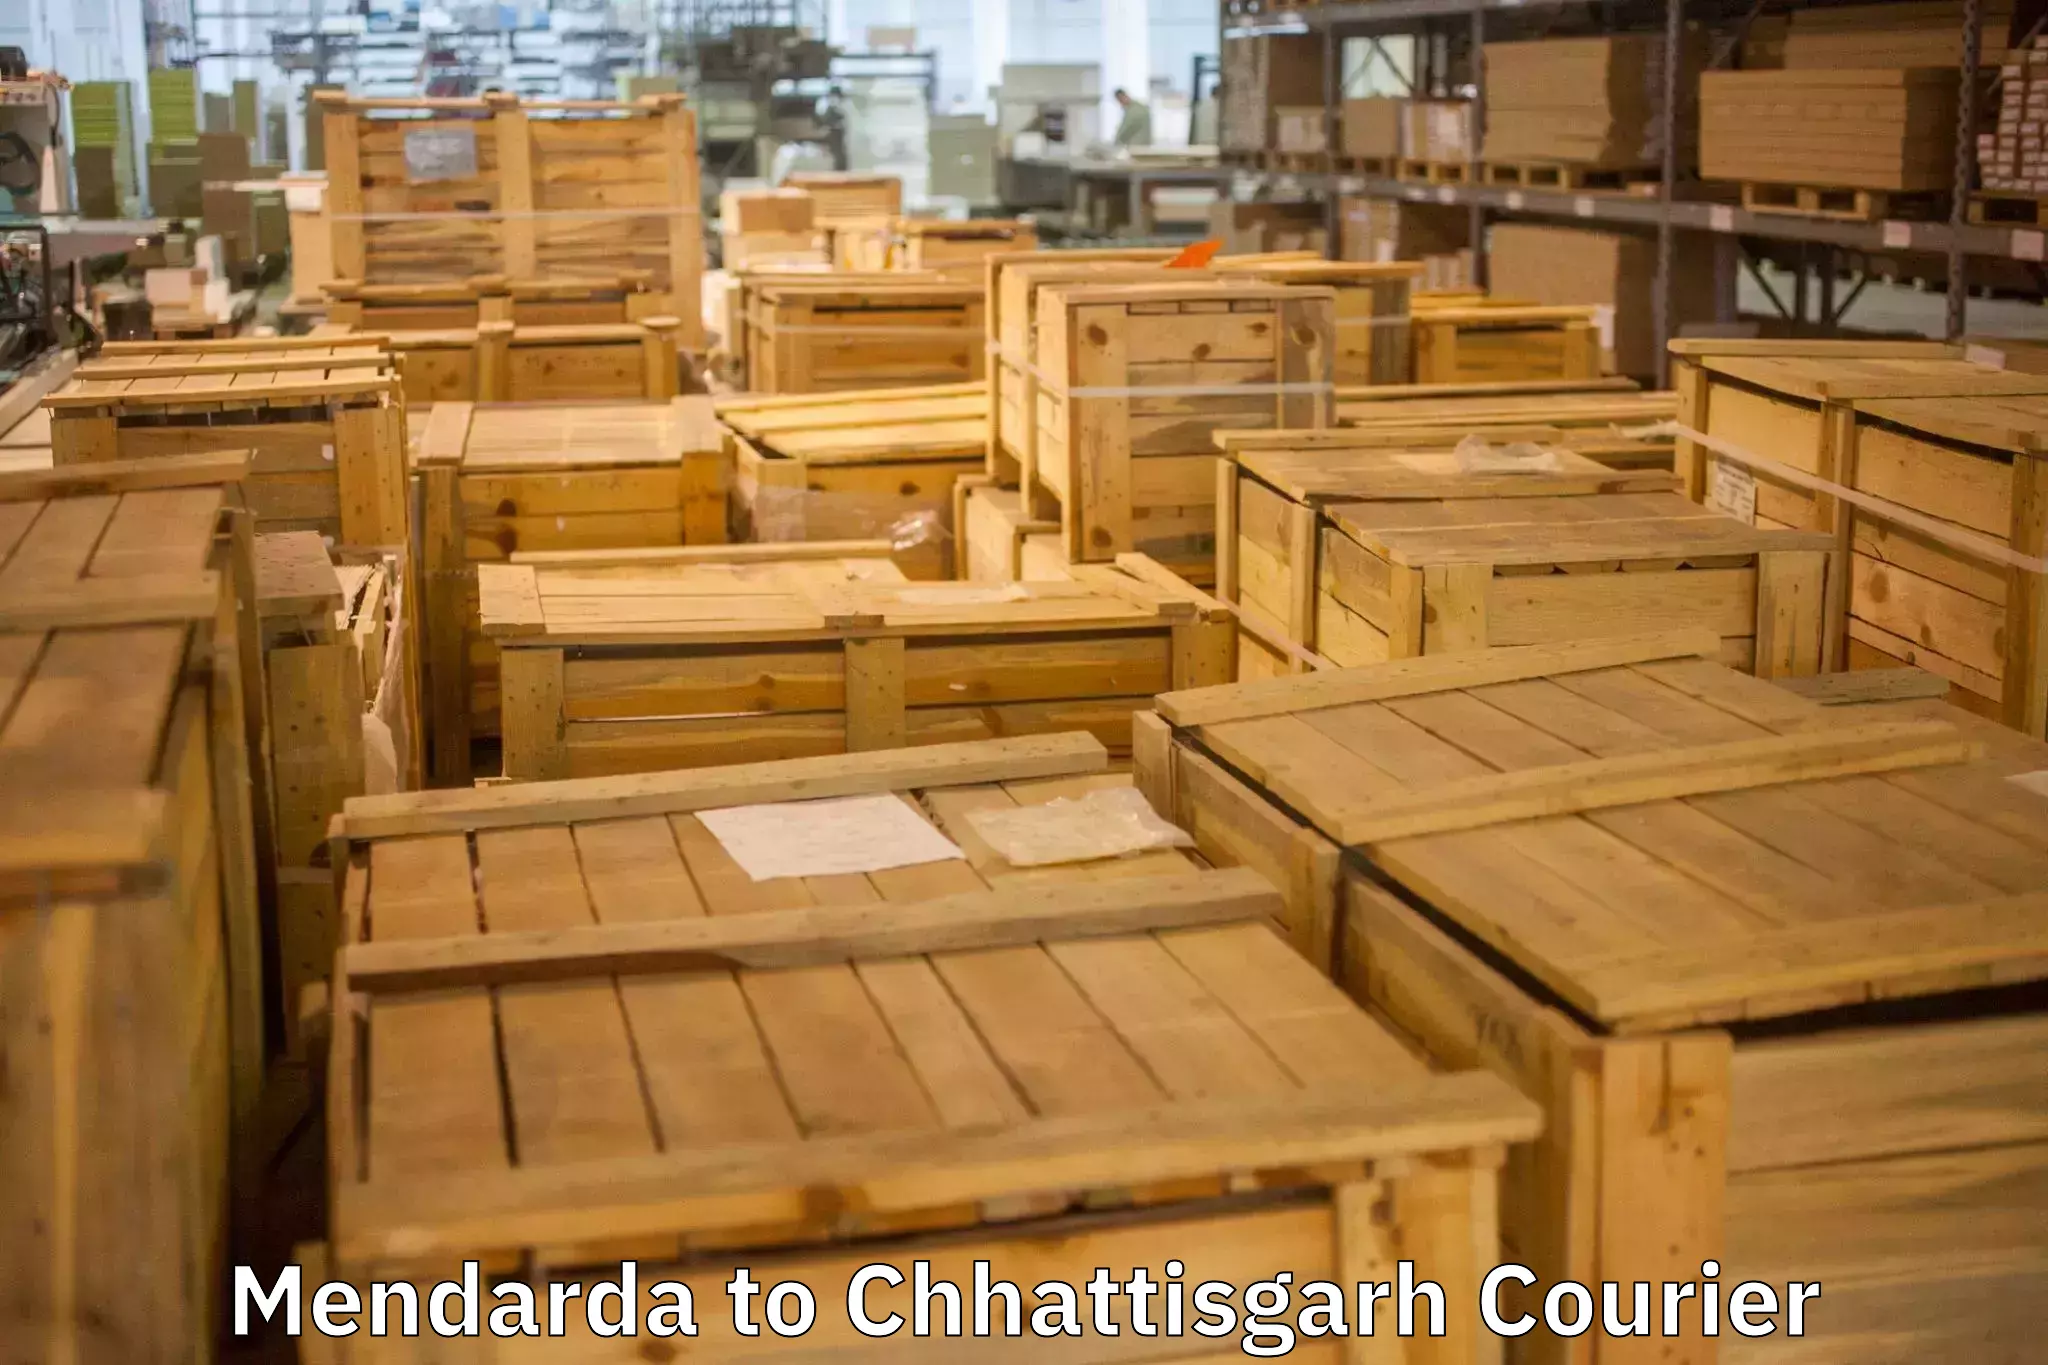 Household goods transport service Mendarda to Chhattisgarh